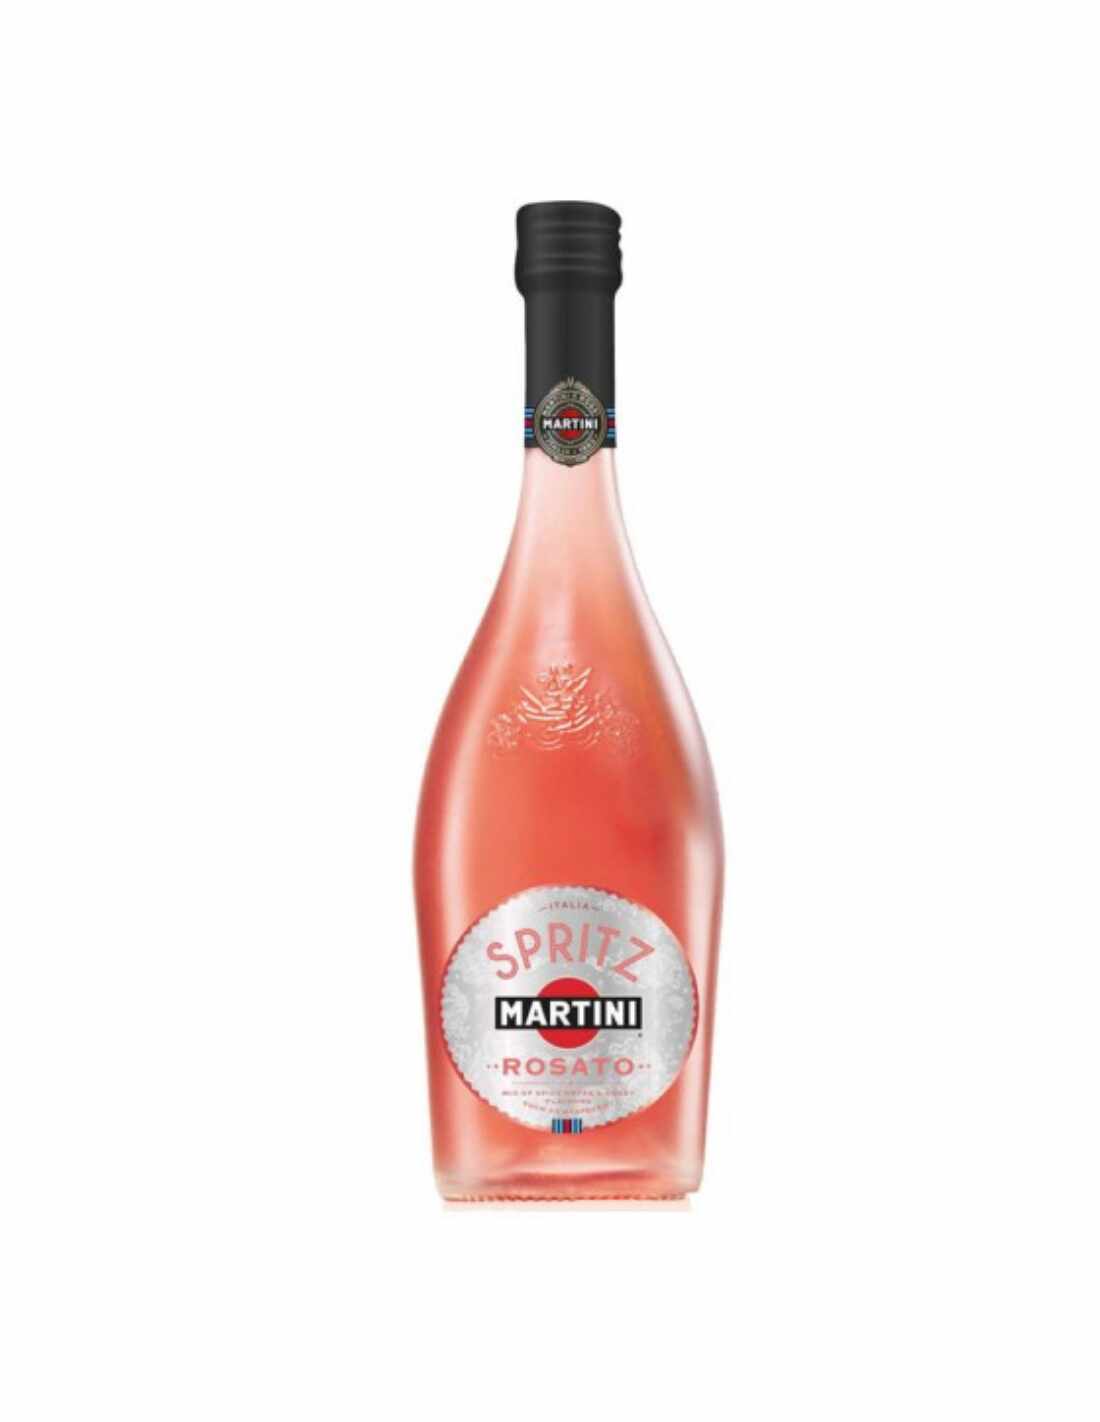 Aperitiv Martini Spritz Rosato, 0.75L, 8% alc., Italia